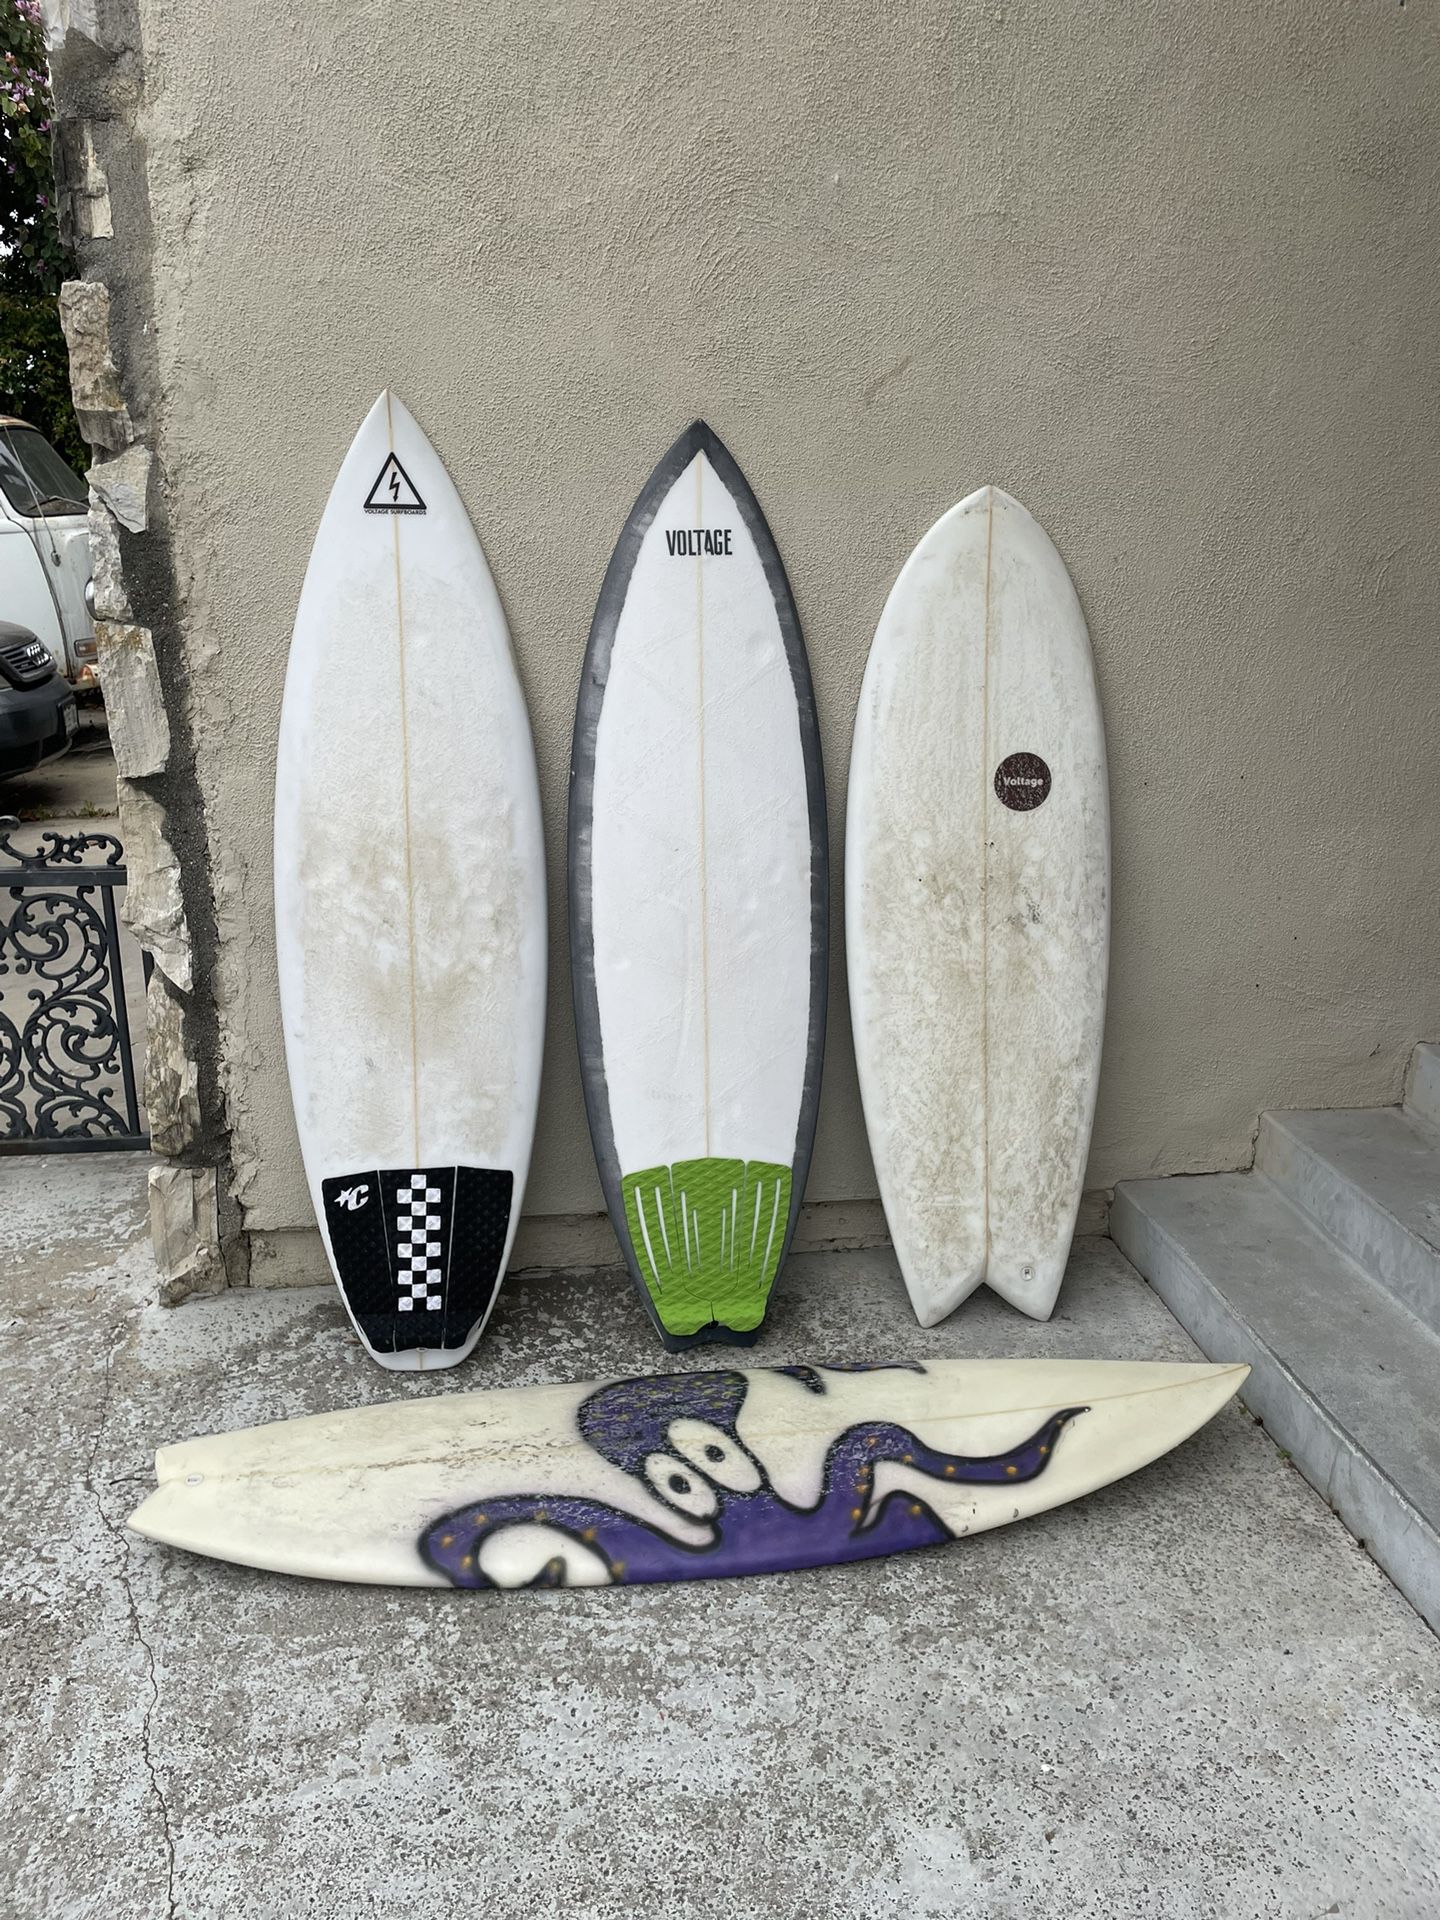 Cheap surfboards